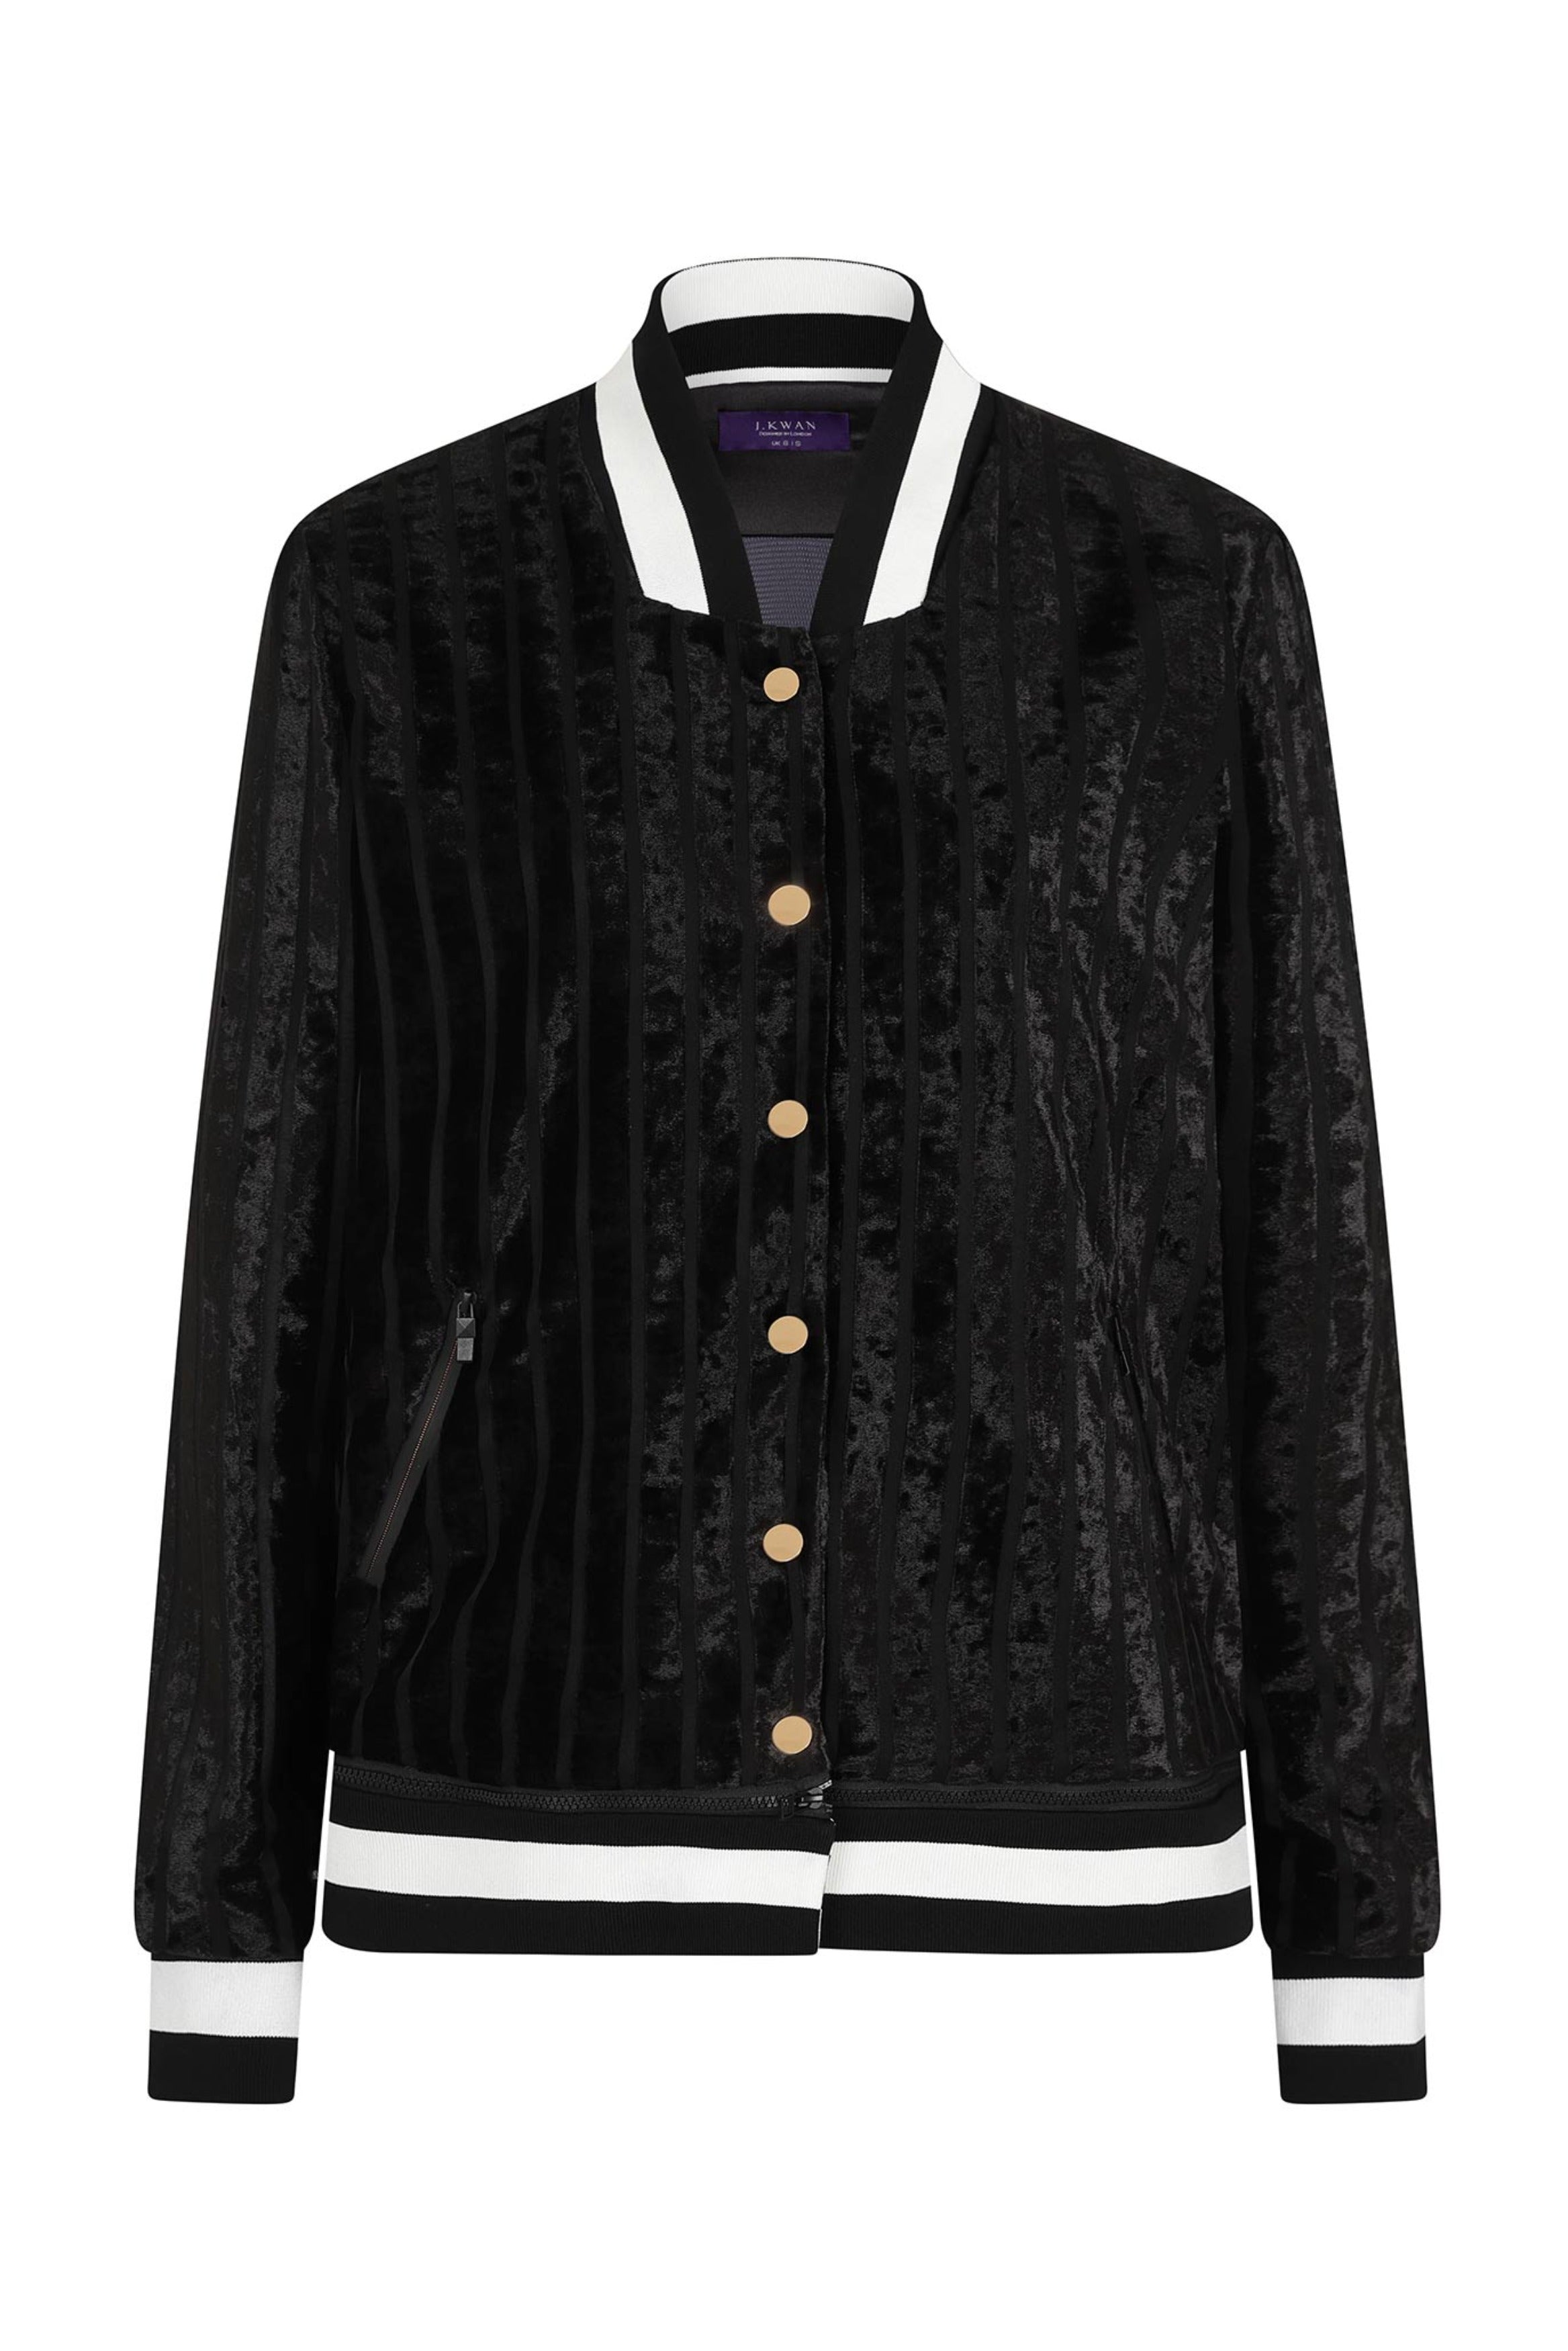 Vibrant Black Varsity Jacket